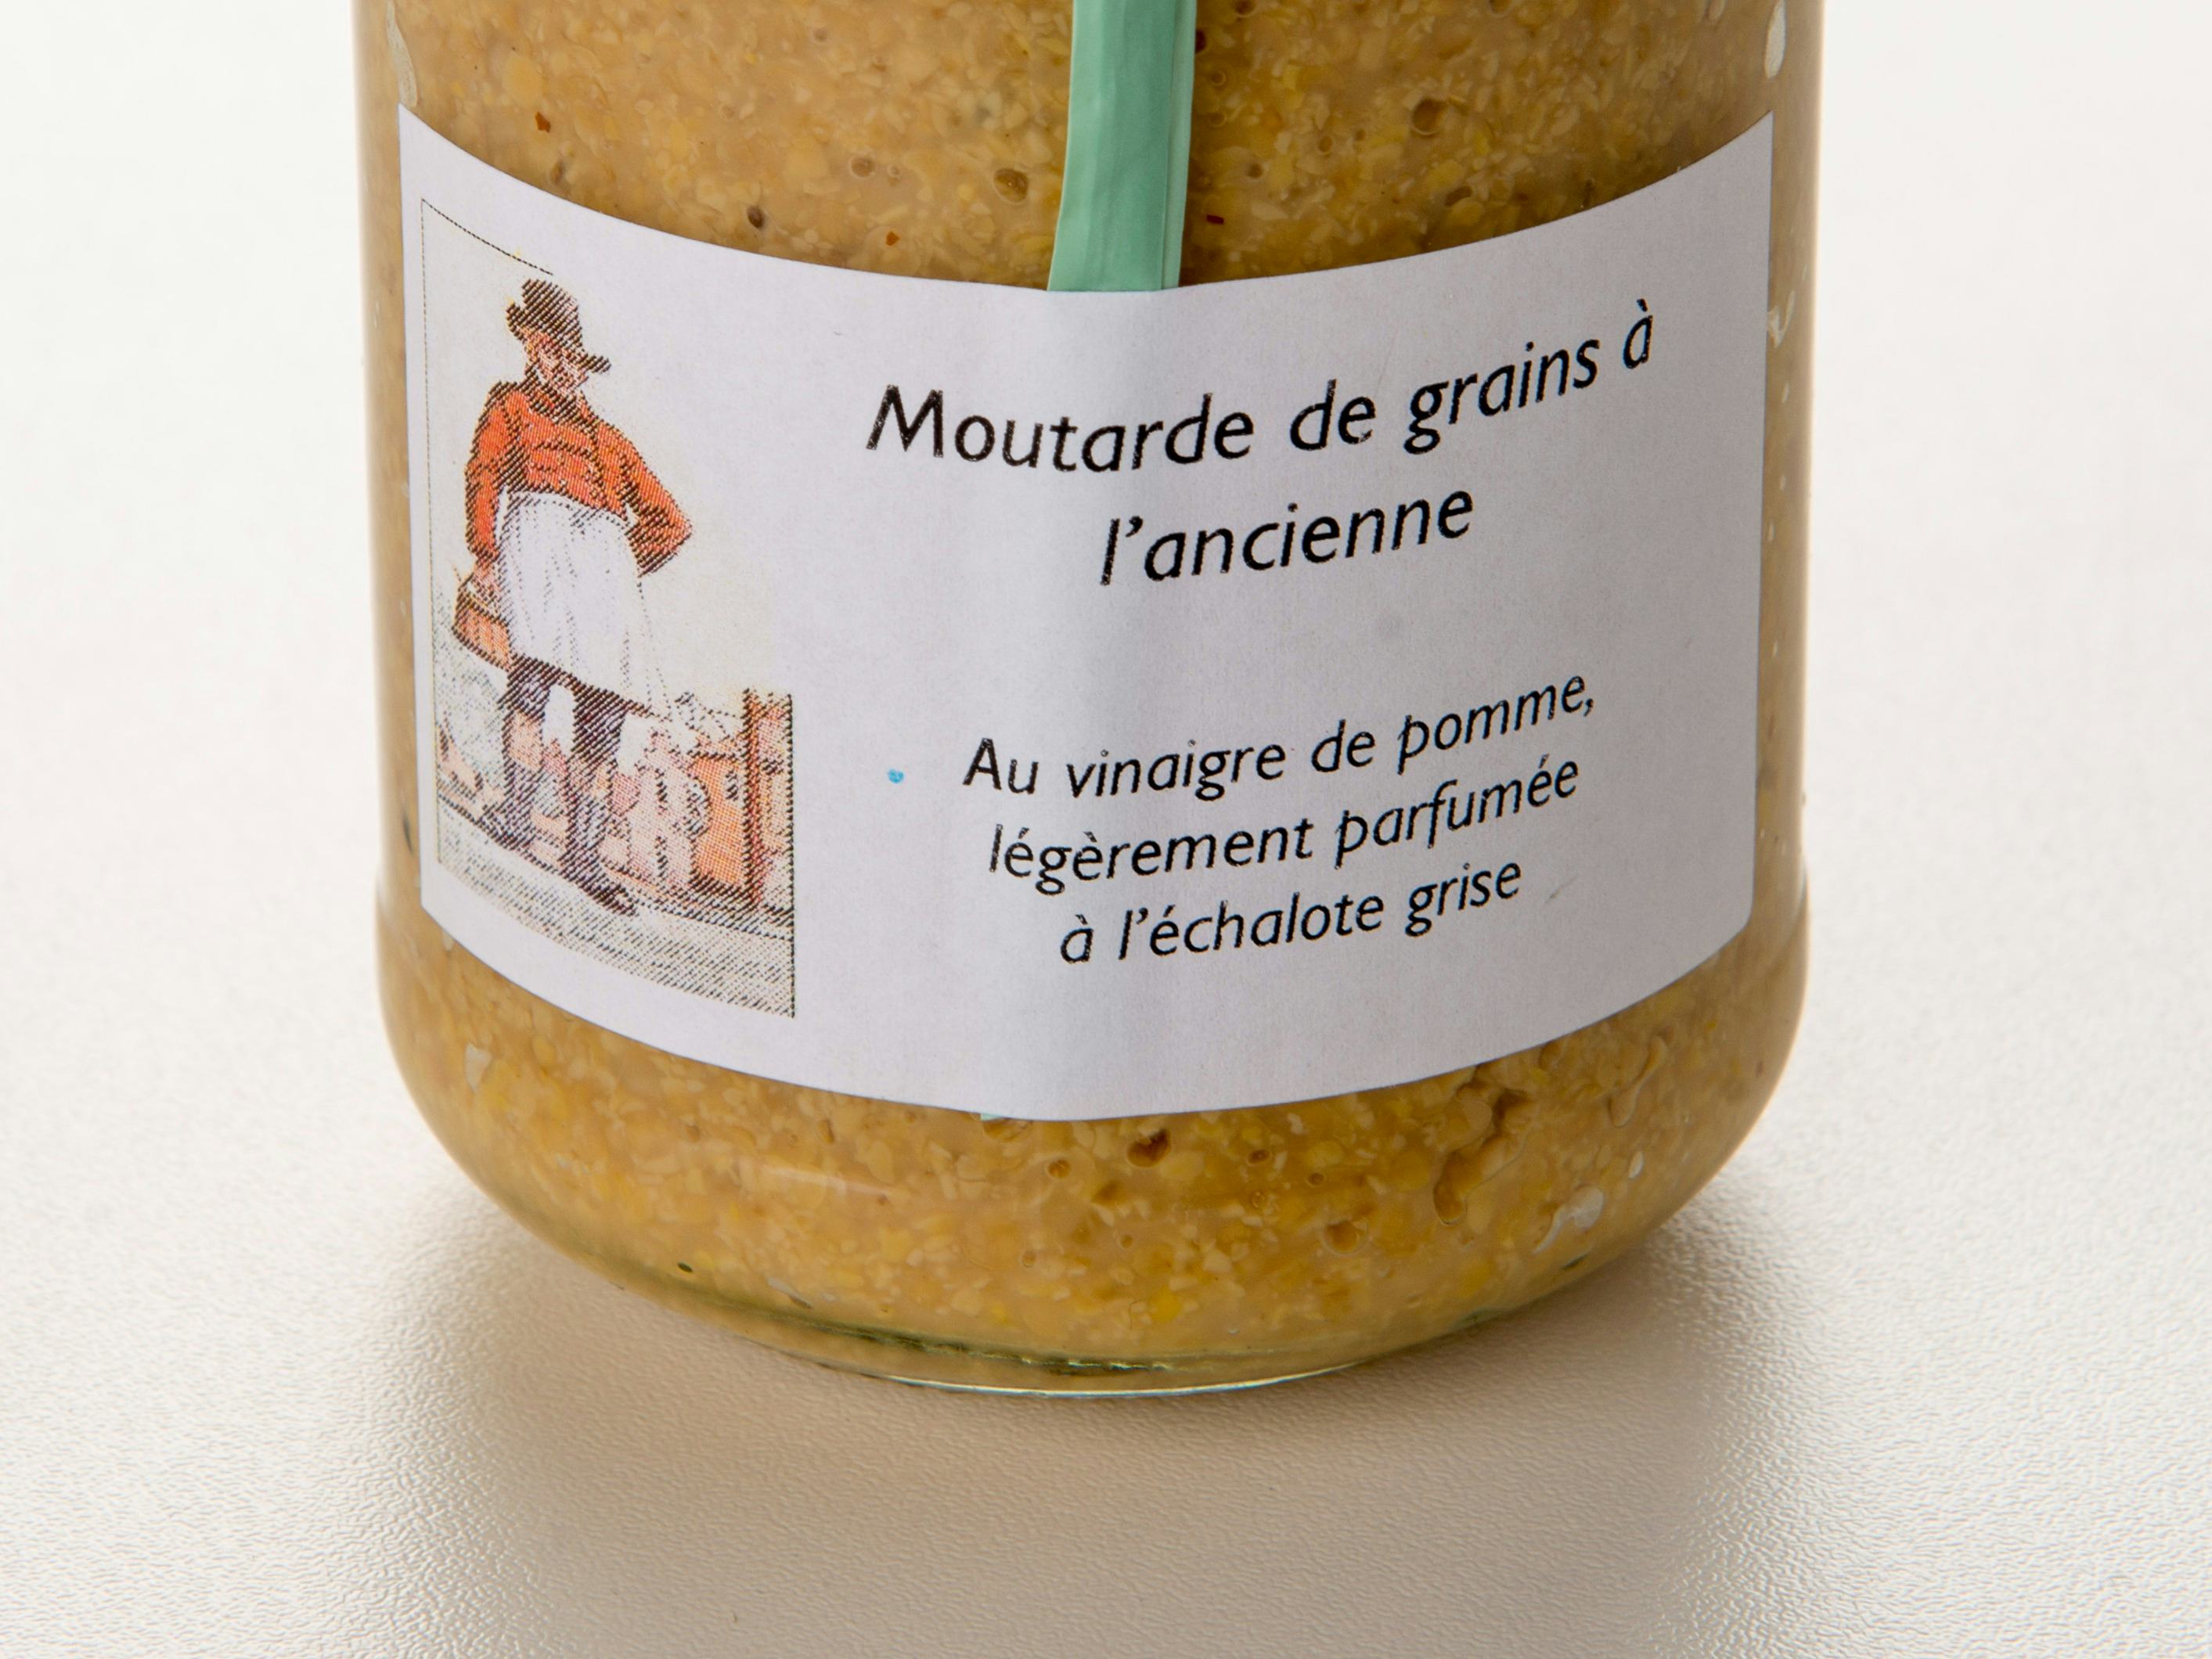 Senape con scalogno, Vinaigrerie-Moutarderie du Grand-Pré, Hautemorges, image 1 | Mimelis